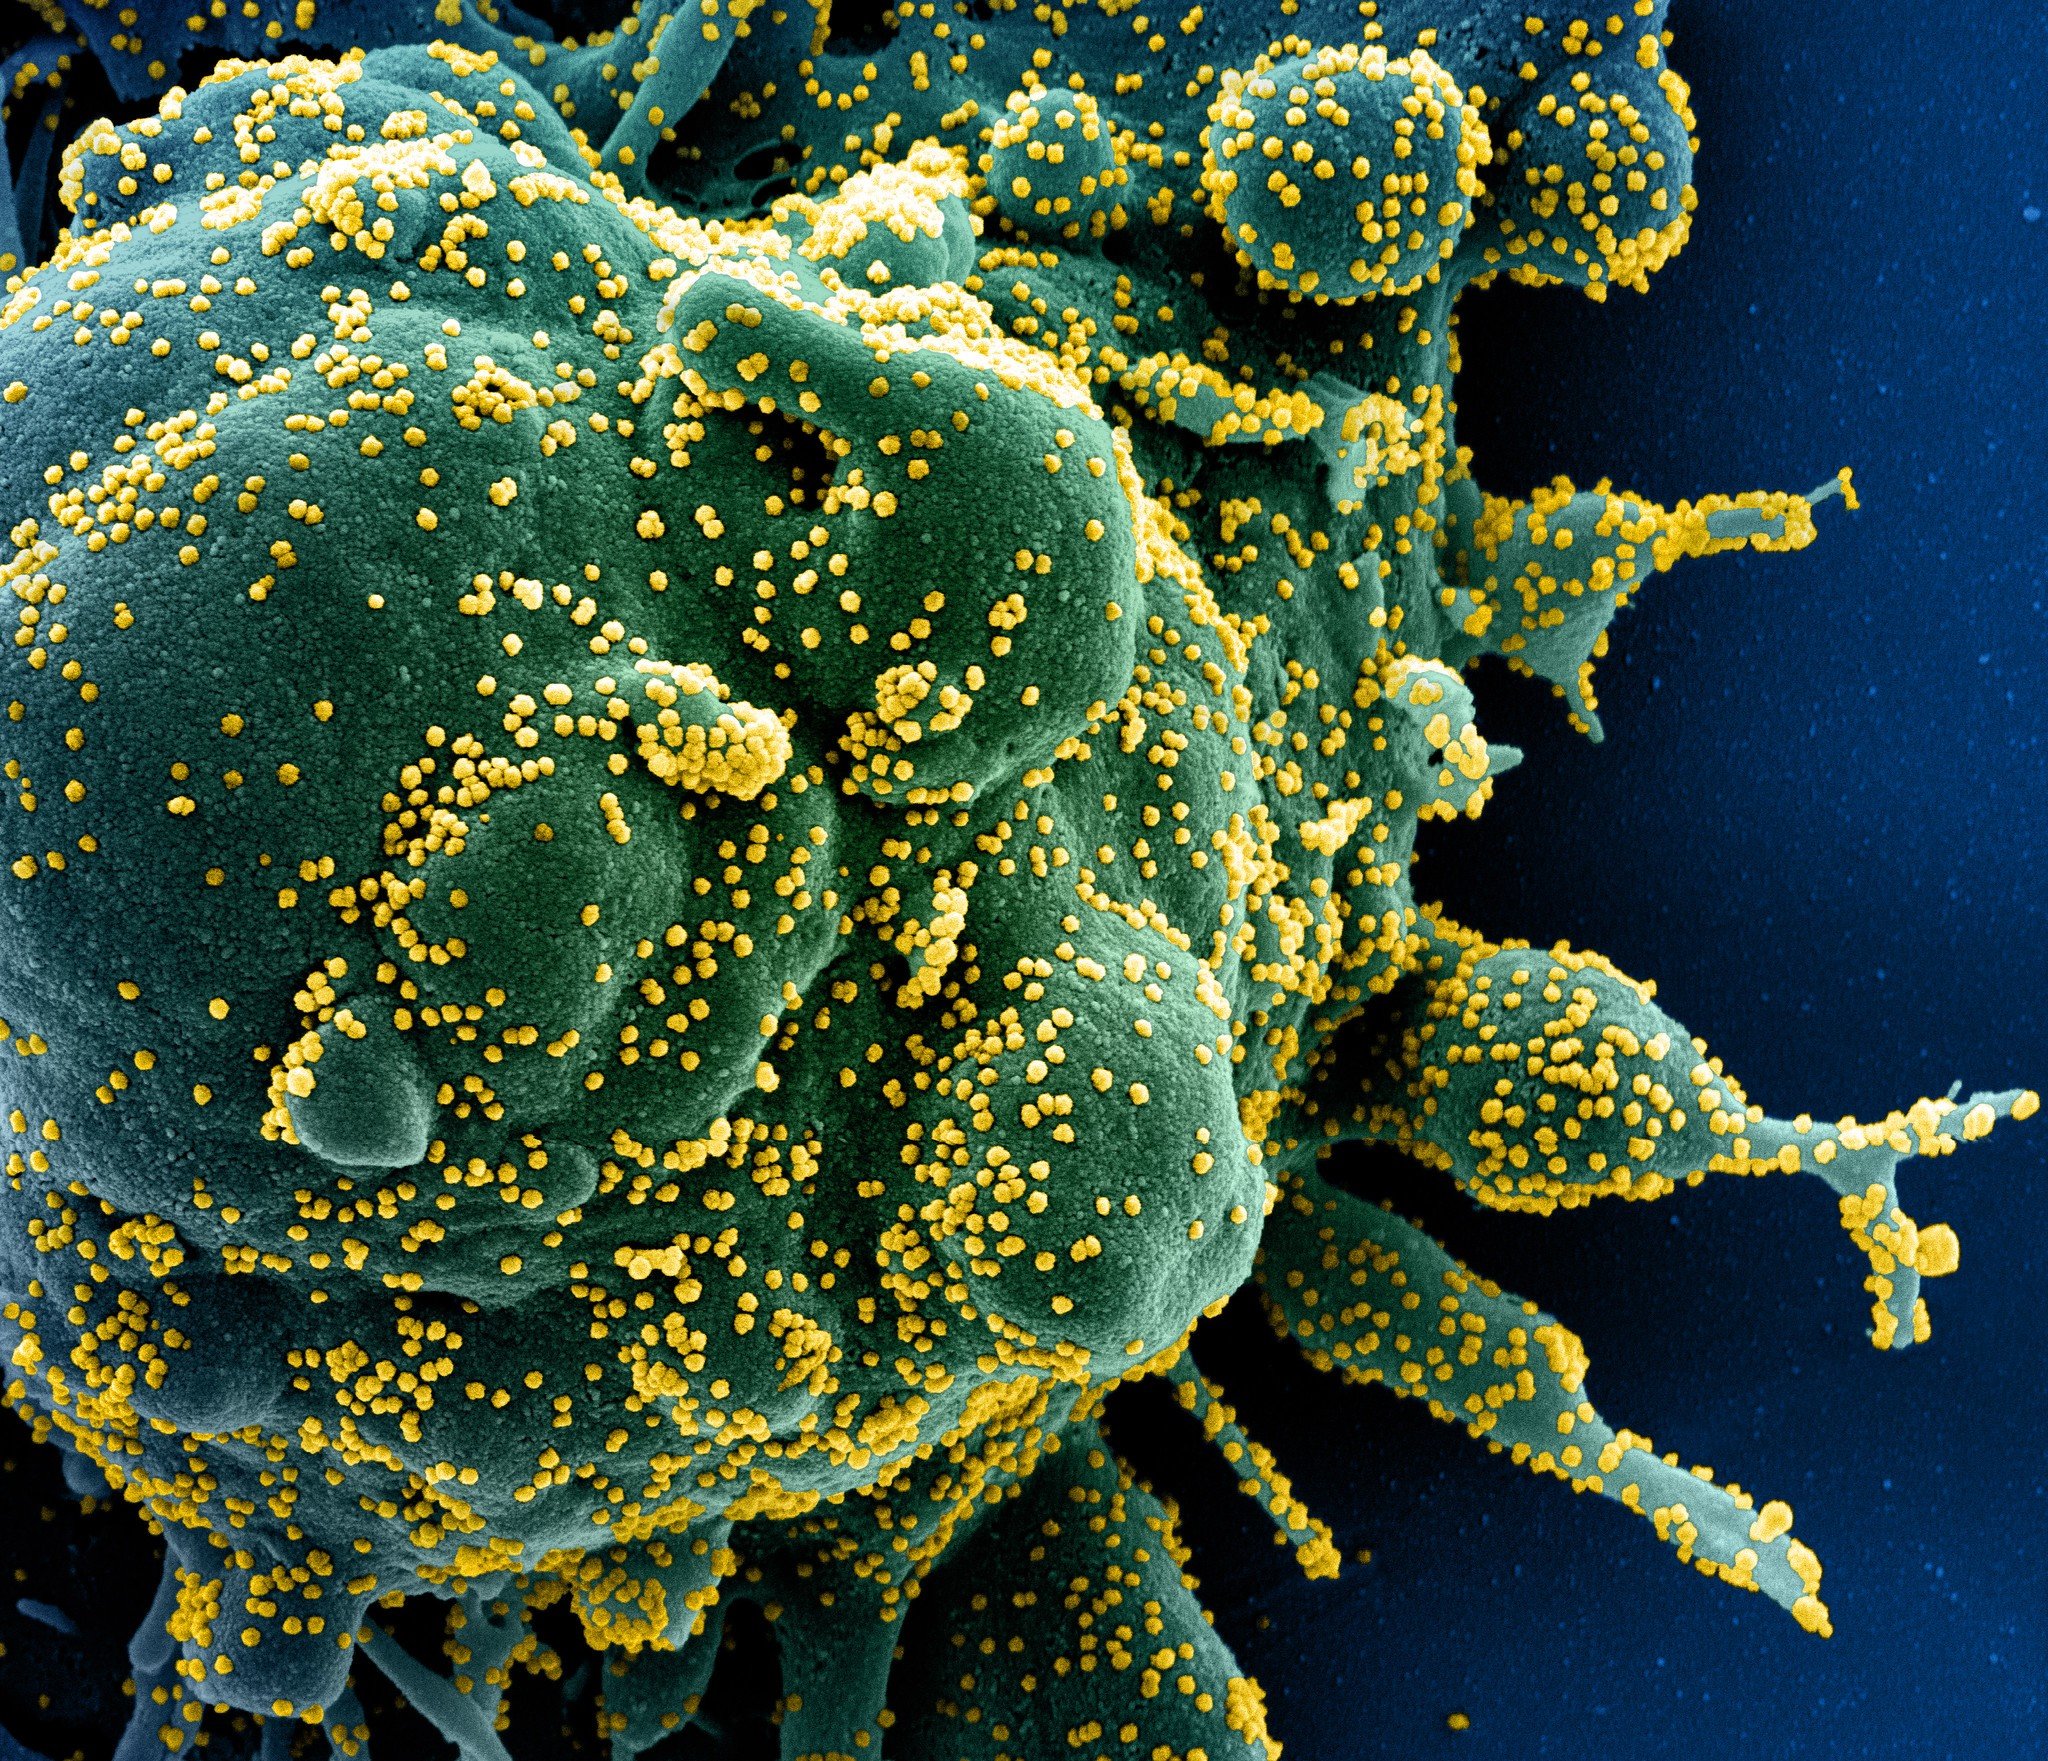 Células T identificam e destroem célula (verde) infectada pelo Sars-CoV-2 (amarelo)  (Fonte: NIAID/Reprodução)